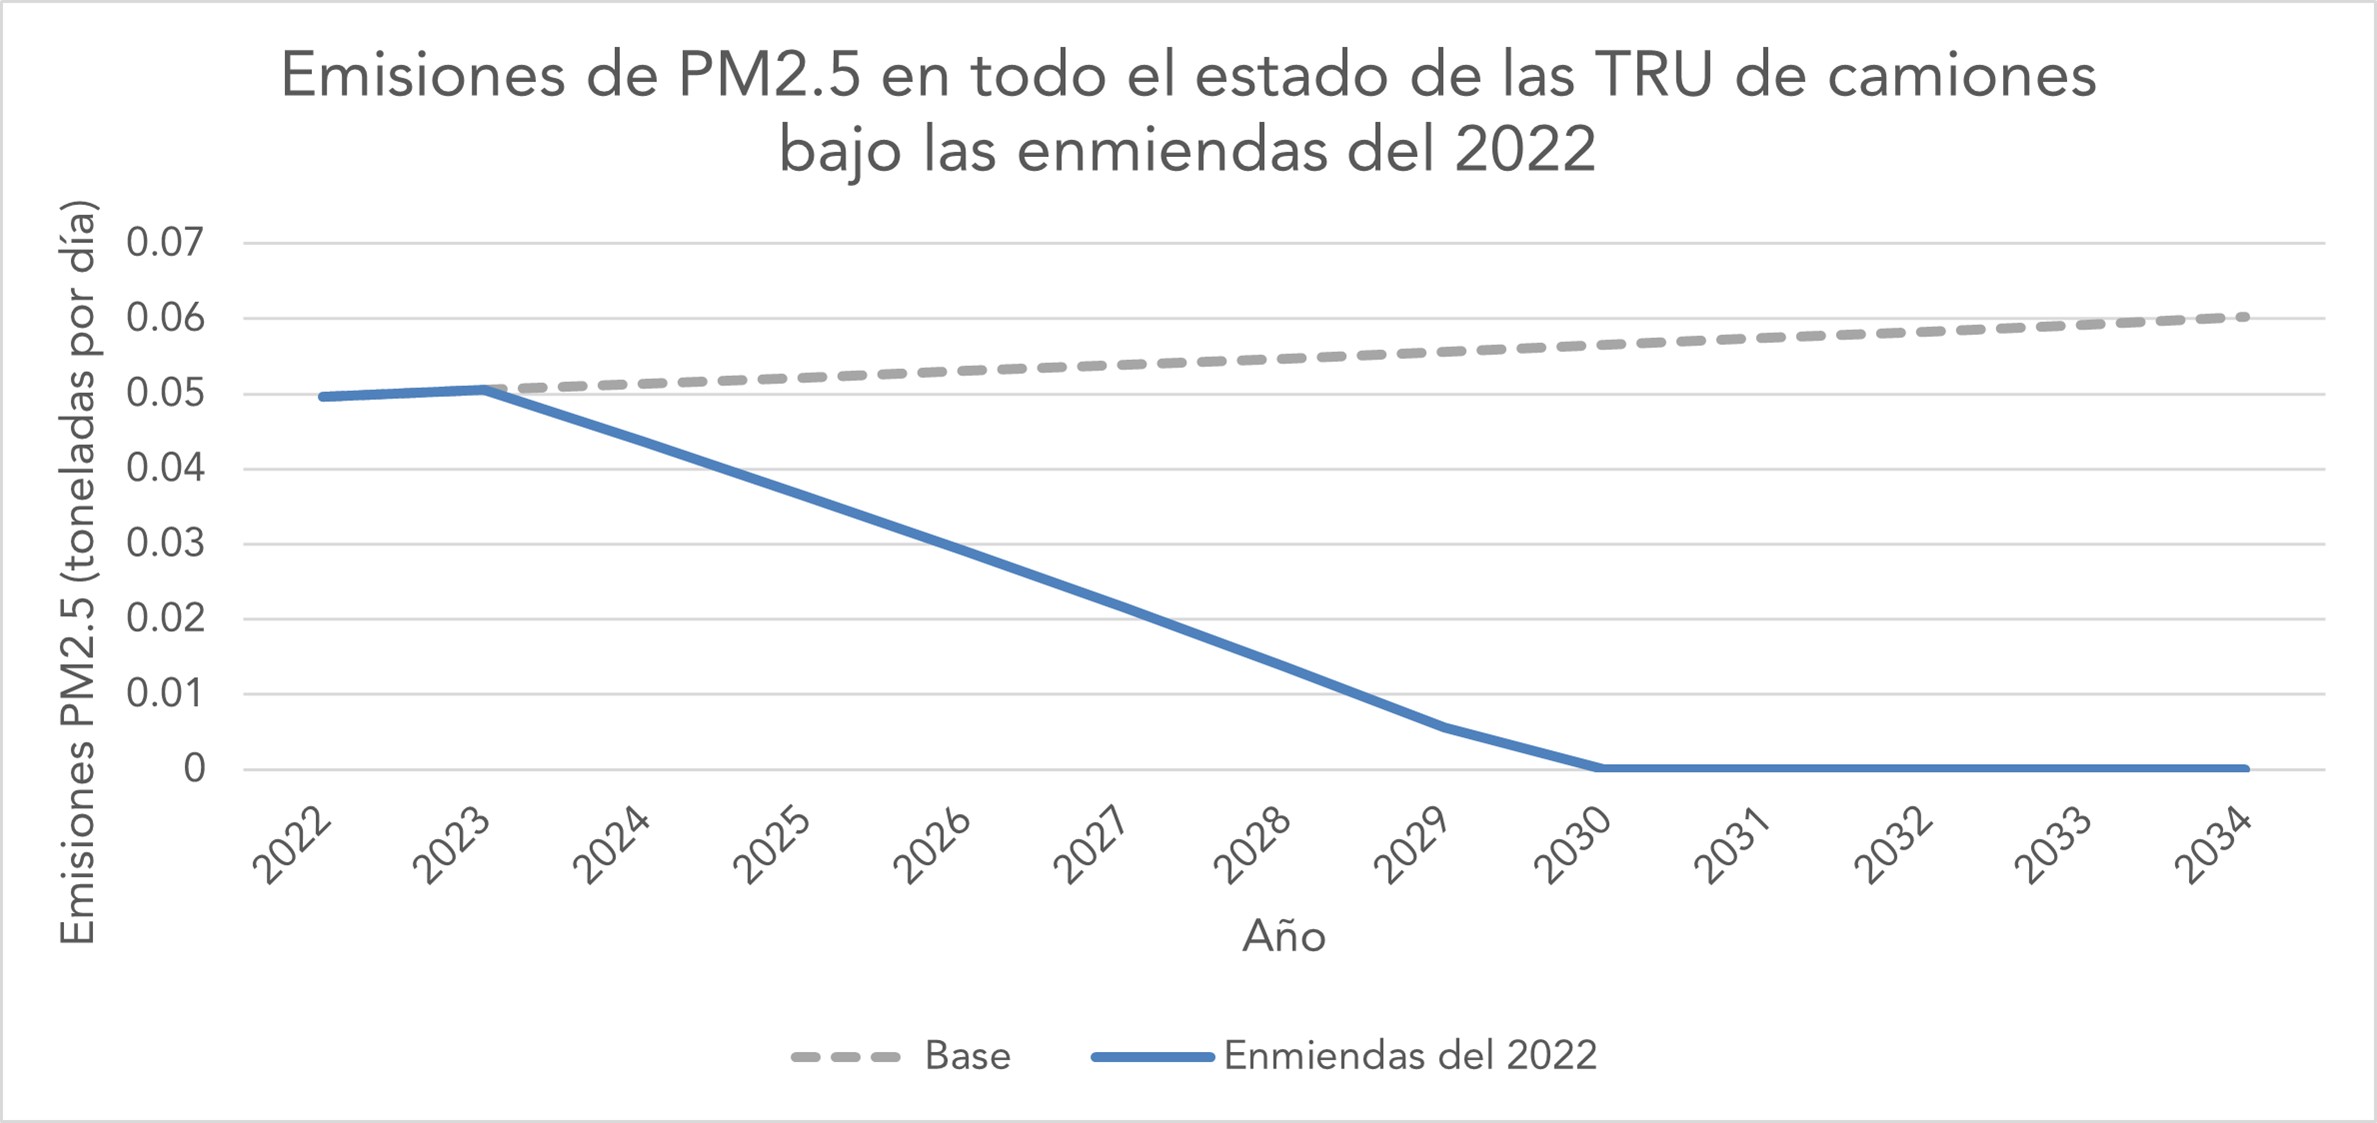 Emisones de PM2.5 en todo el estado de los camiones TRU según las enmiendas del 2022.